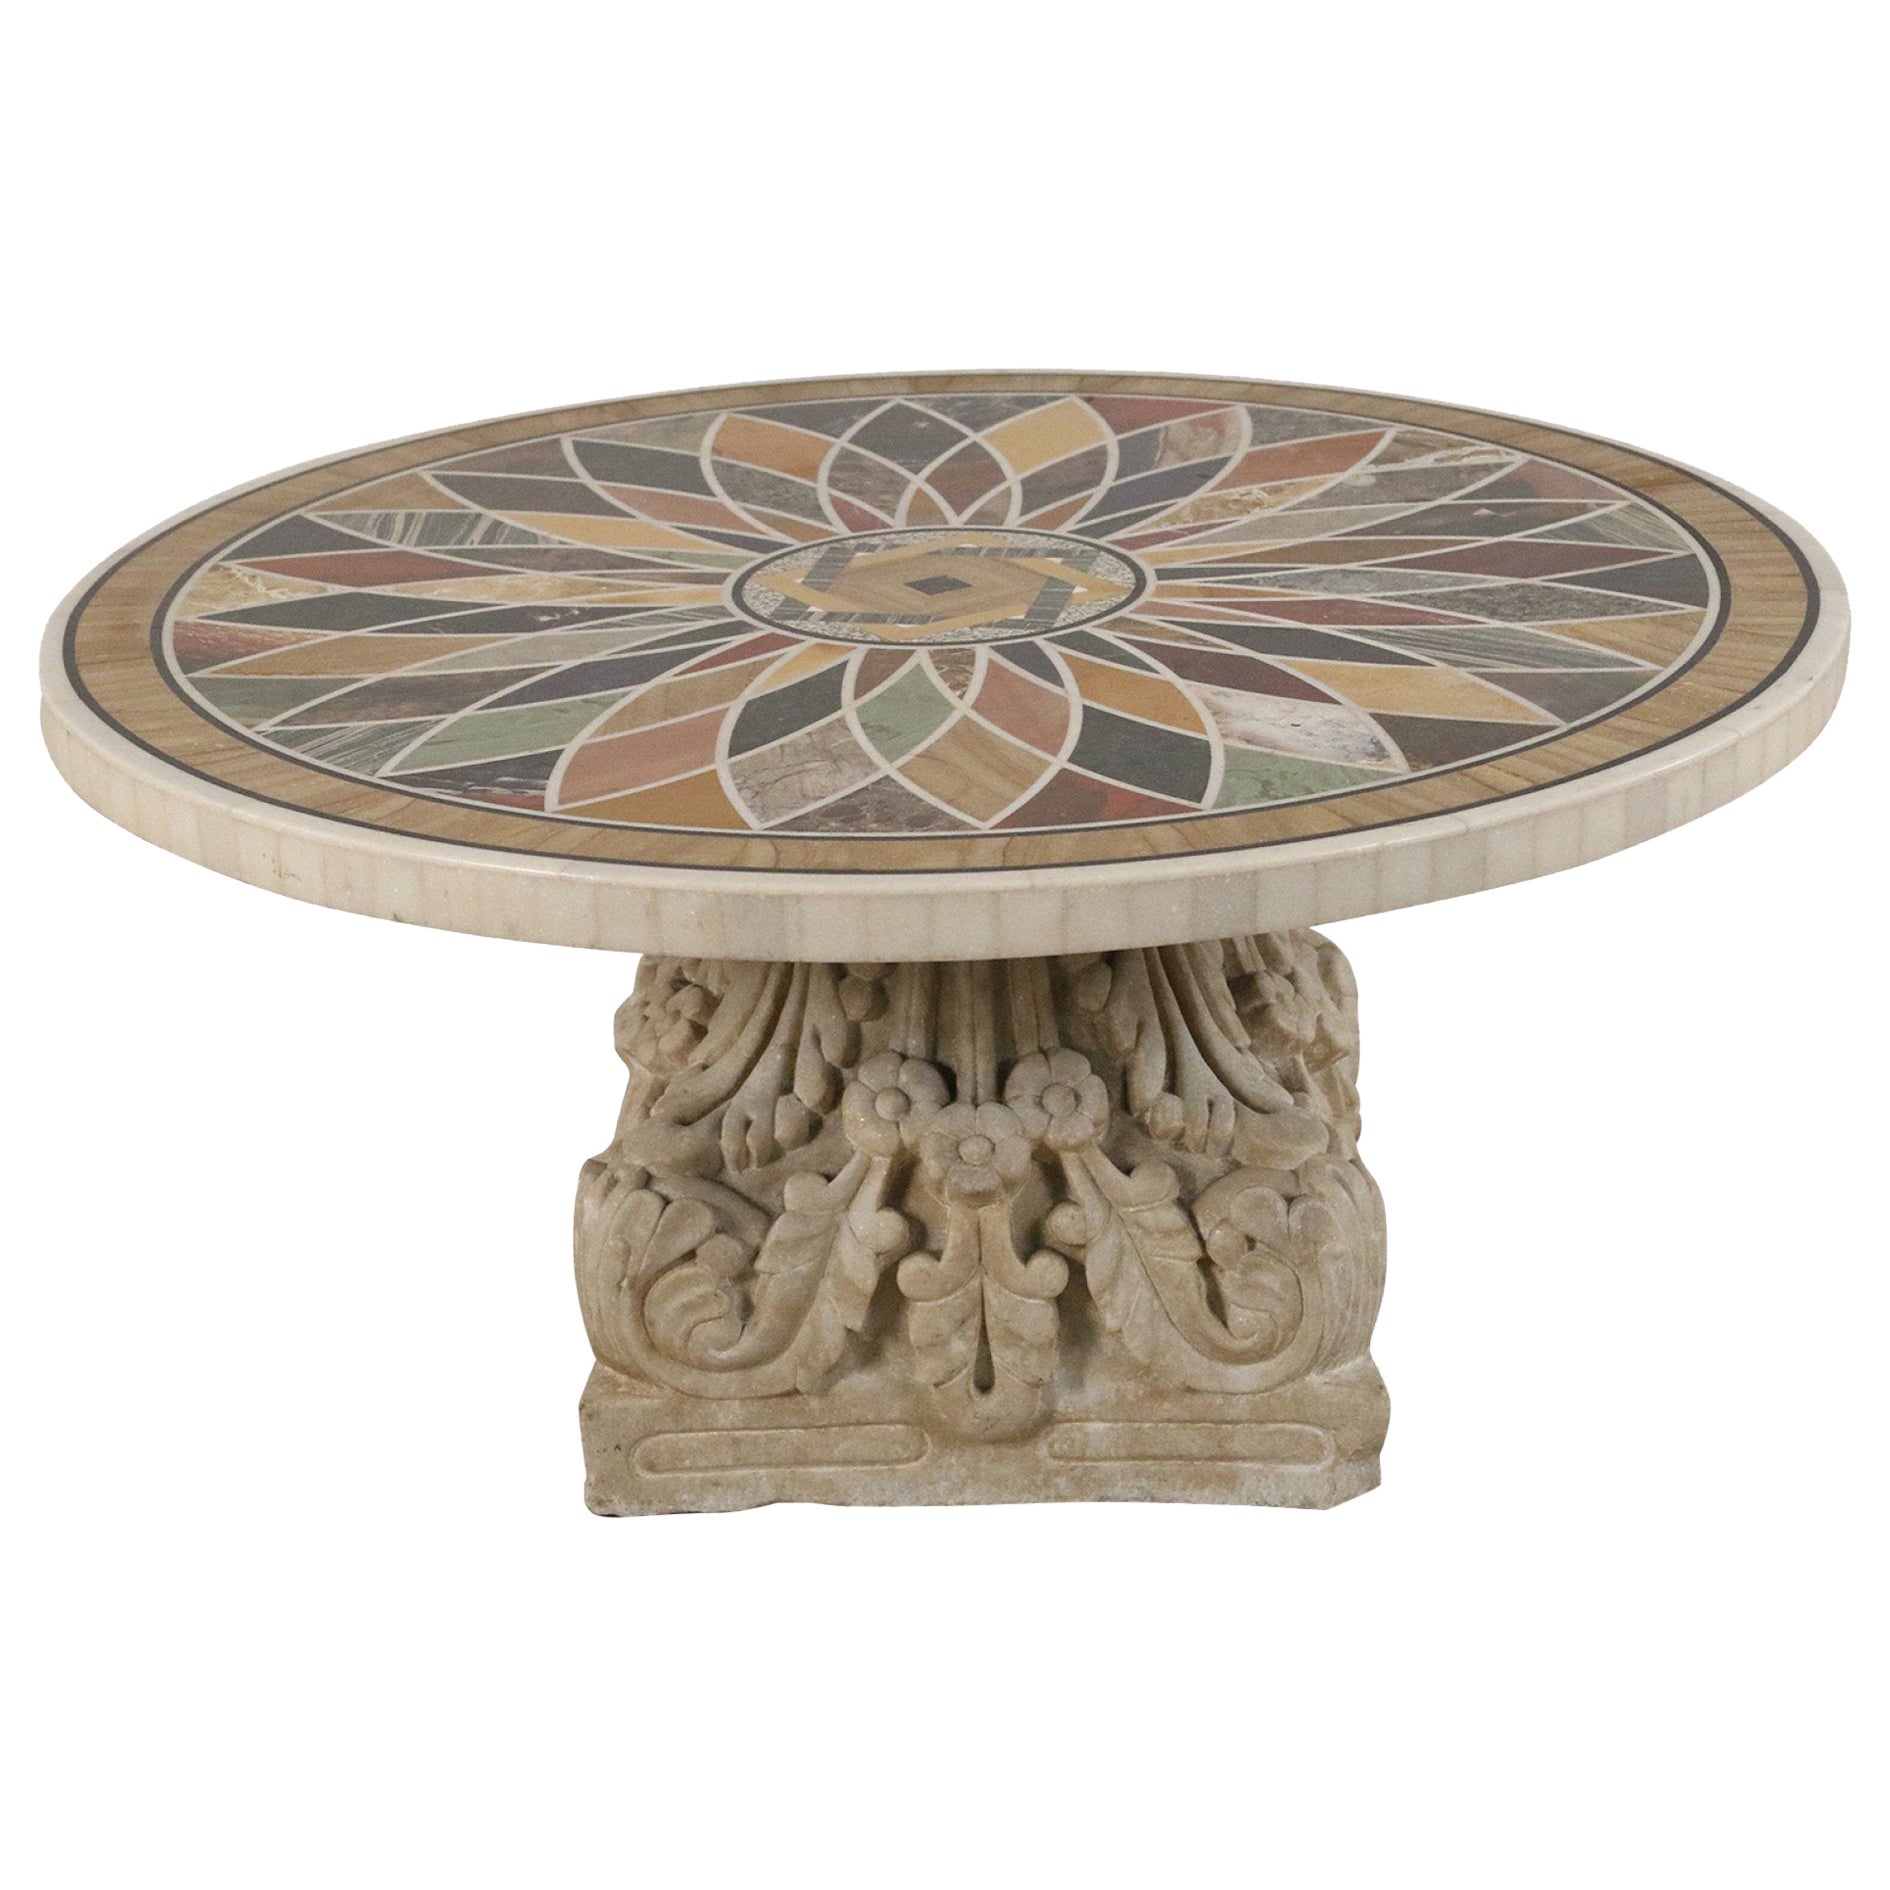 Table basse italienne néoclassique en marbre incrusté et base en forme de feuille d'acanthe, de style néoclassique